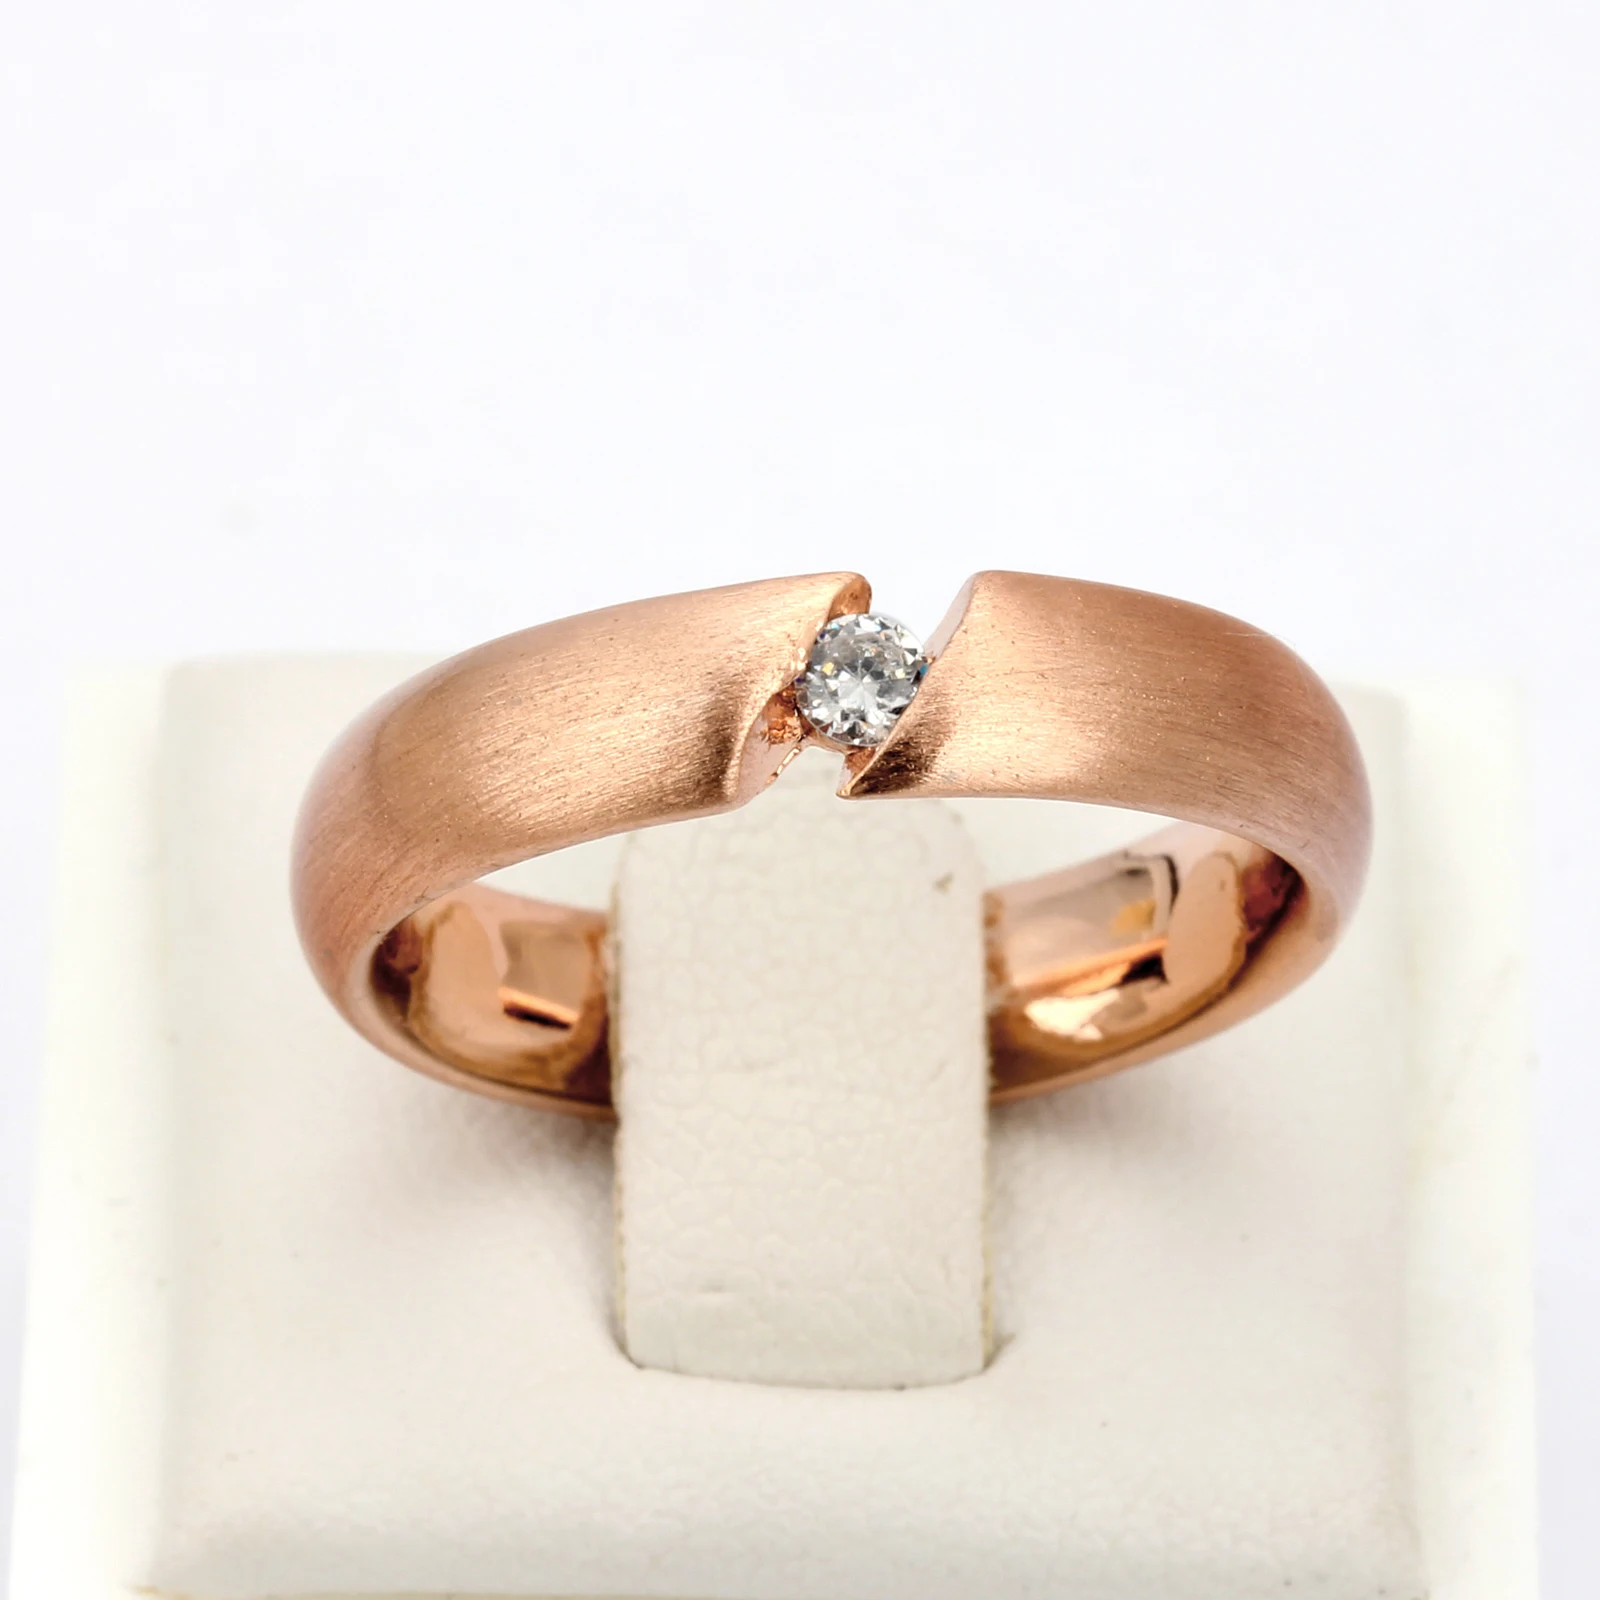 ZHOUYANG высокое качество CZ проволока рисунок процесс розовое золото цвет любовника кольцо с австрийским кристаллом Полный размеры ZYR441 ZYR442